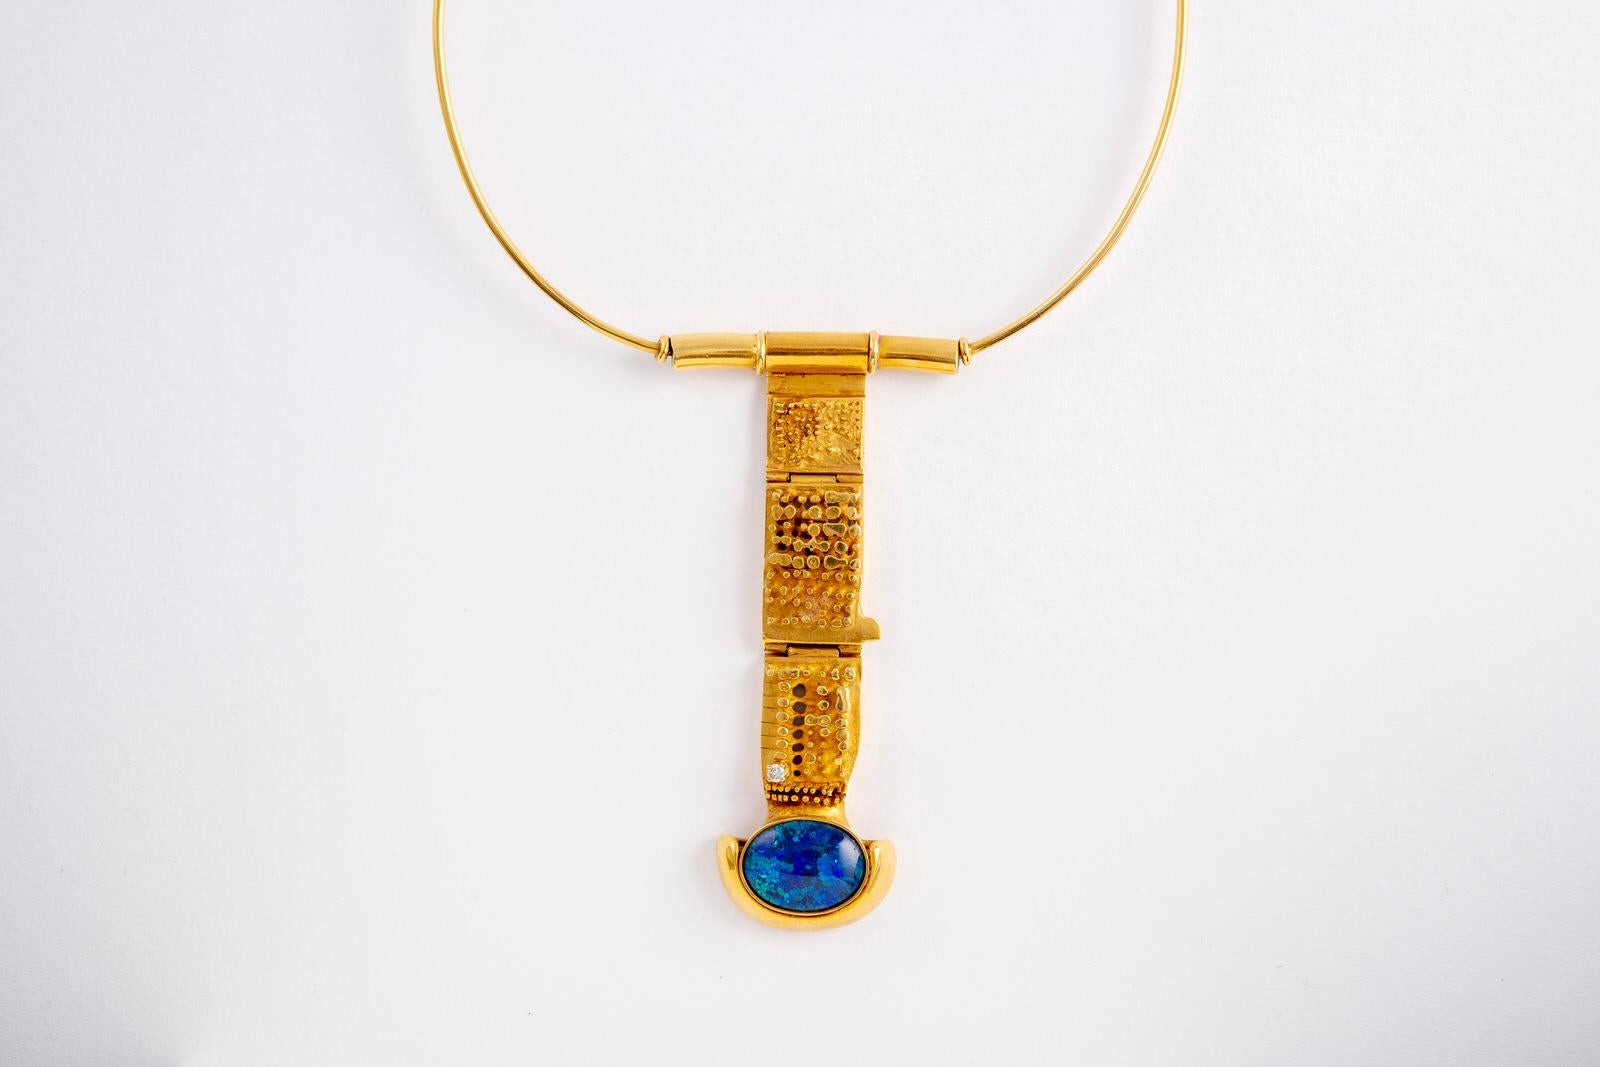 Atelier Fernand DEMARET (Bijouterie Fernand DEMARET)
Halskette aus 18 Karat Gold und schwarzem synthetischem Opal. 
von Fernand Demaret , einem berühmten belgischen Goldschmied und den Künstlern seines Studios.
Einzigartiges Stück
Länge der